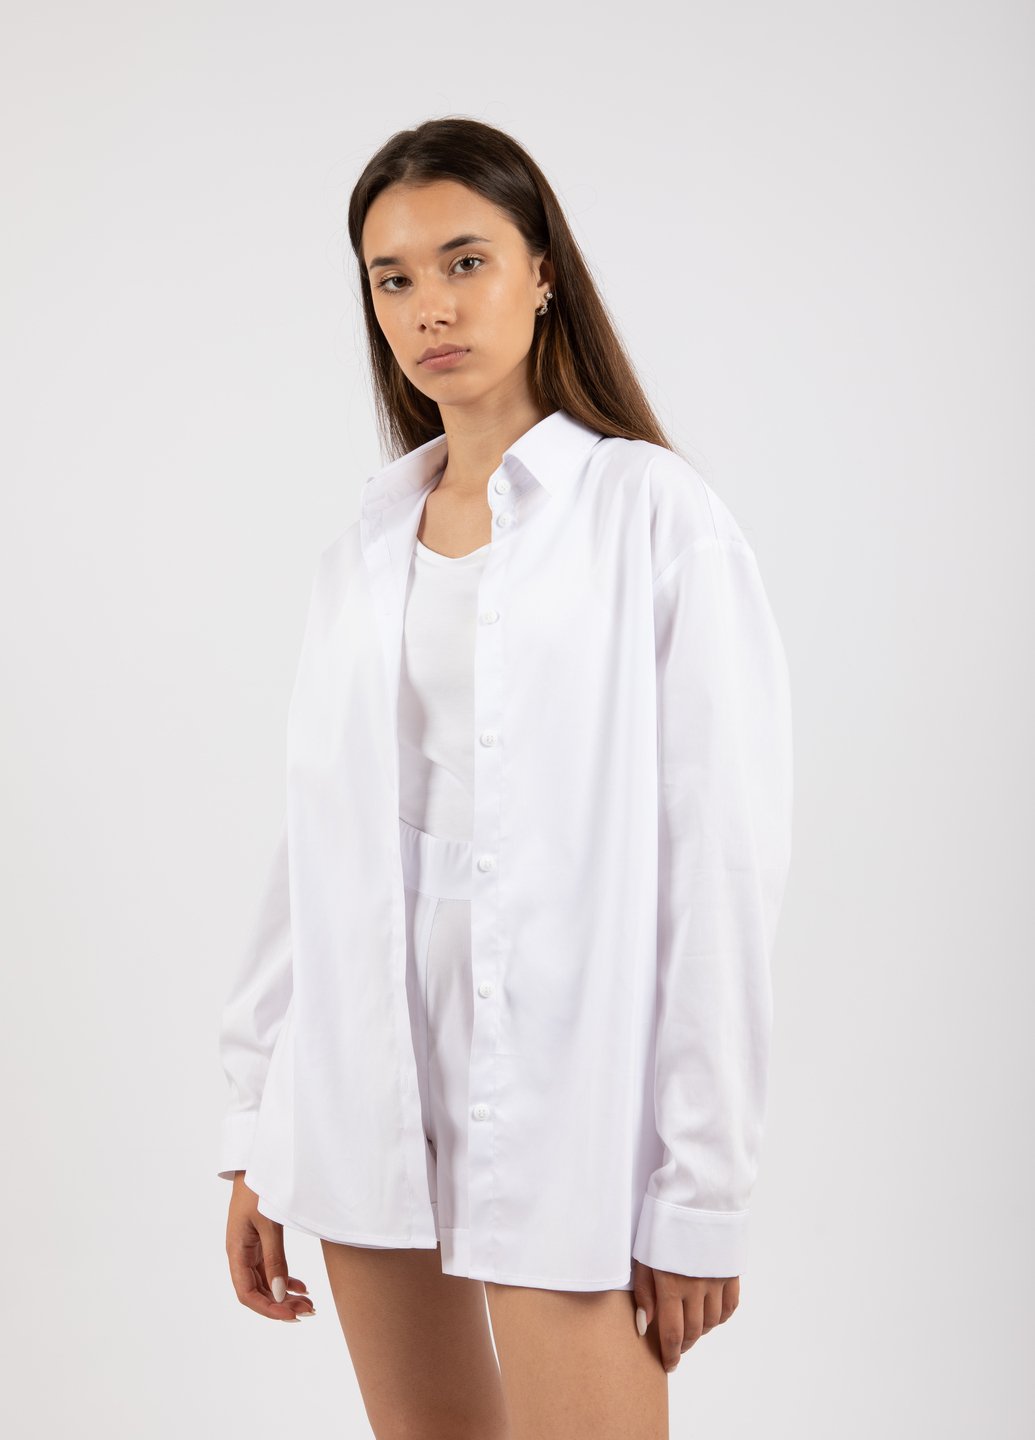 Купить Классическая хлопковая рубашка женская Merlini Вена 200000029 - Белый, 42-44 в интернет-магазине